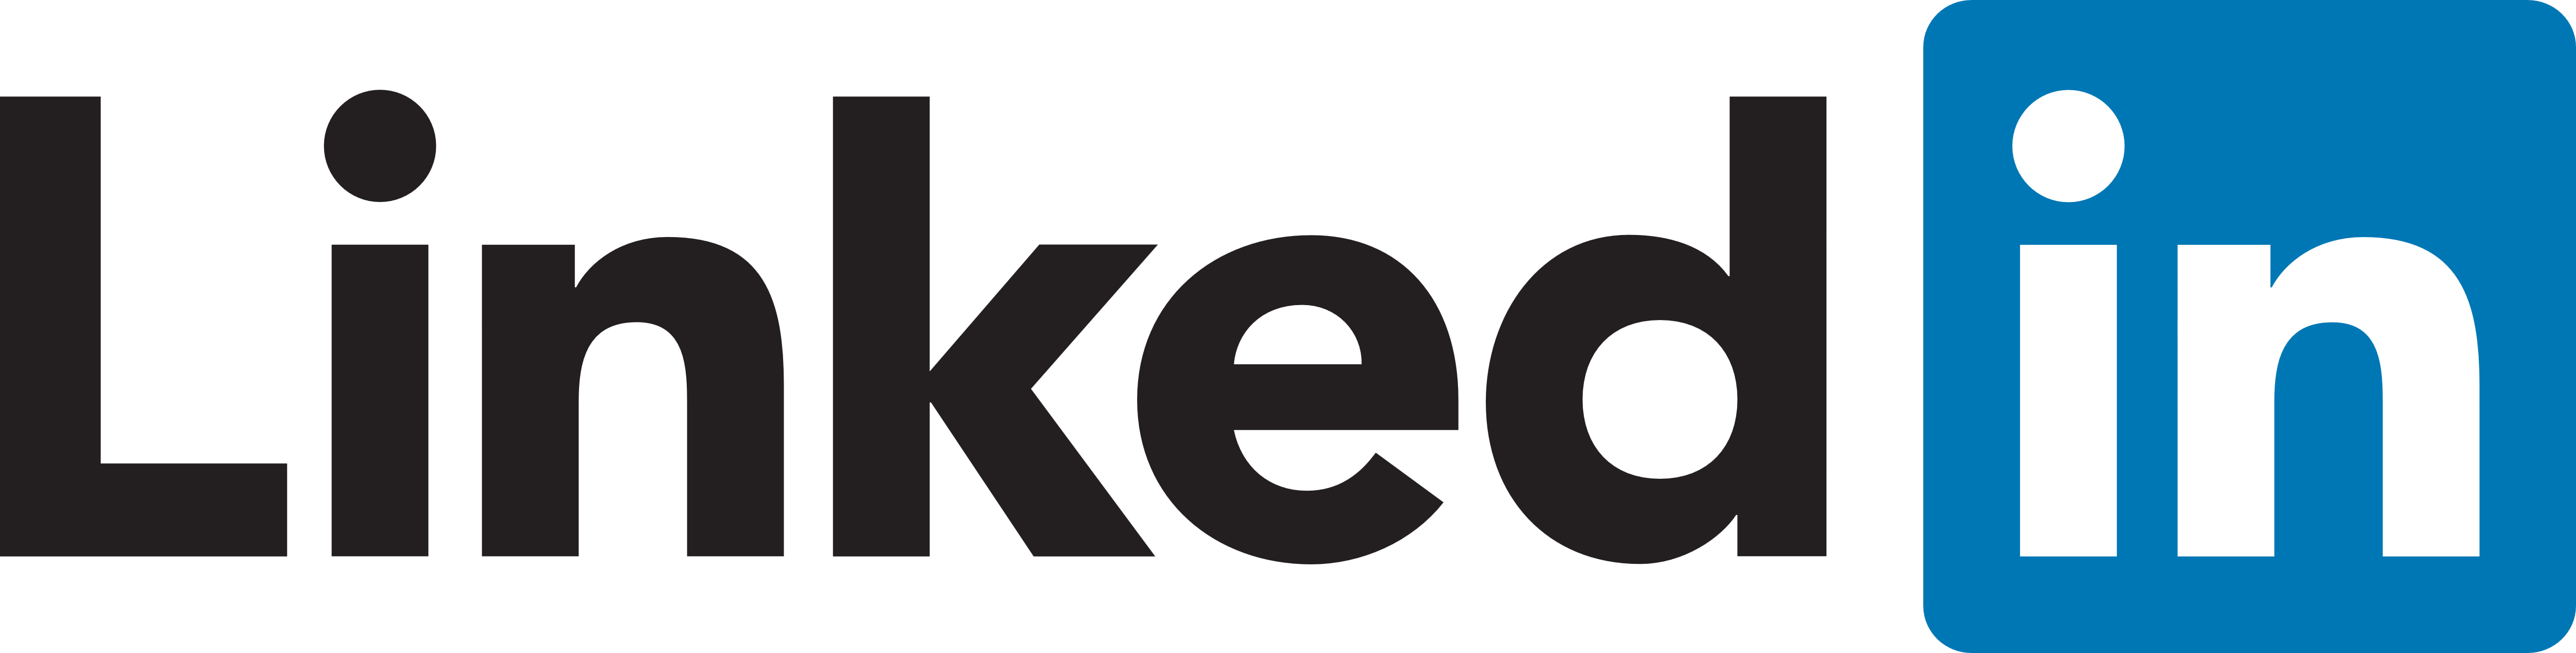 Official Linkedin Logo Png Linked in icon, linkedin logo transparent